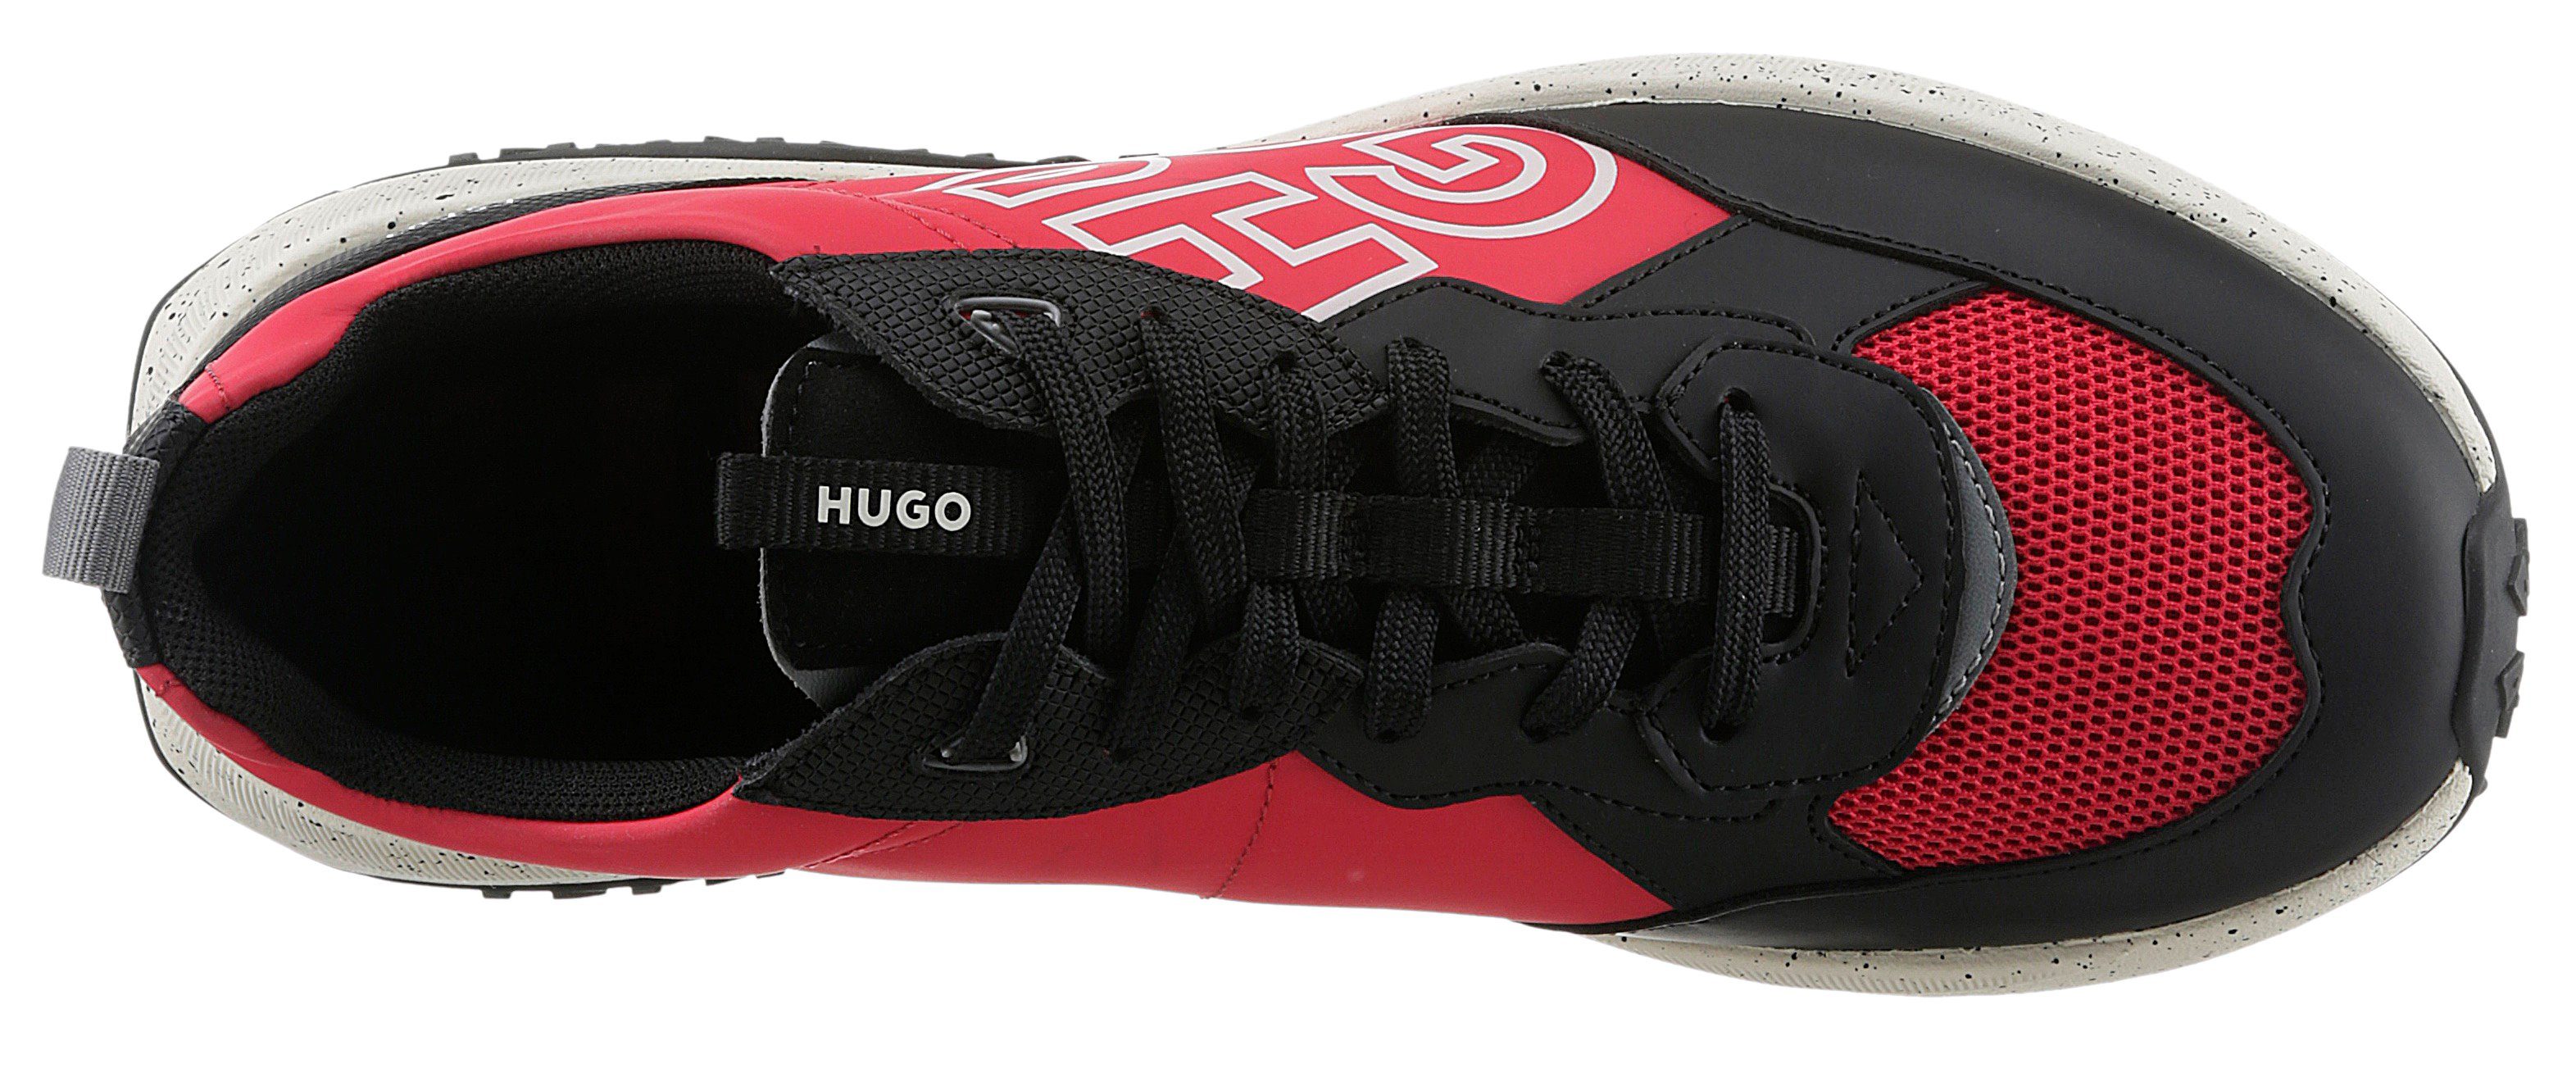 Sneaker rot-schwarz auffälligem Kane_Runn Logoschriftzug HUGO mit